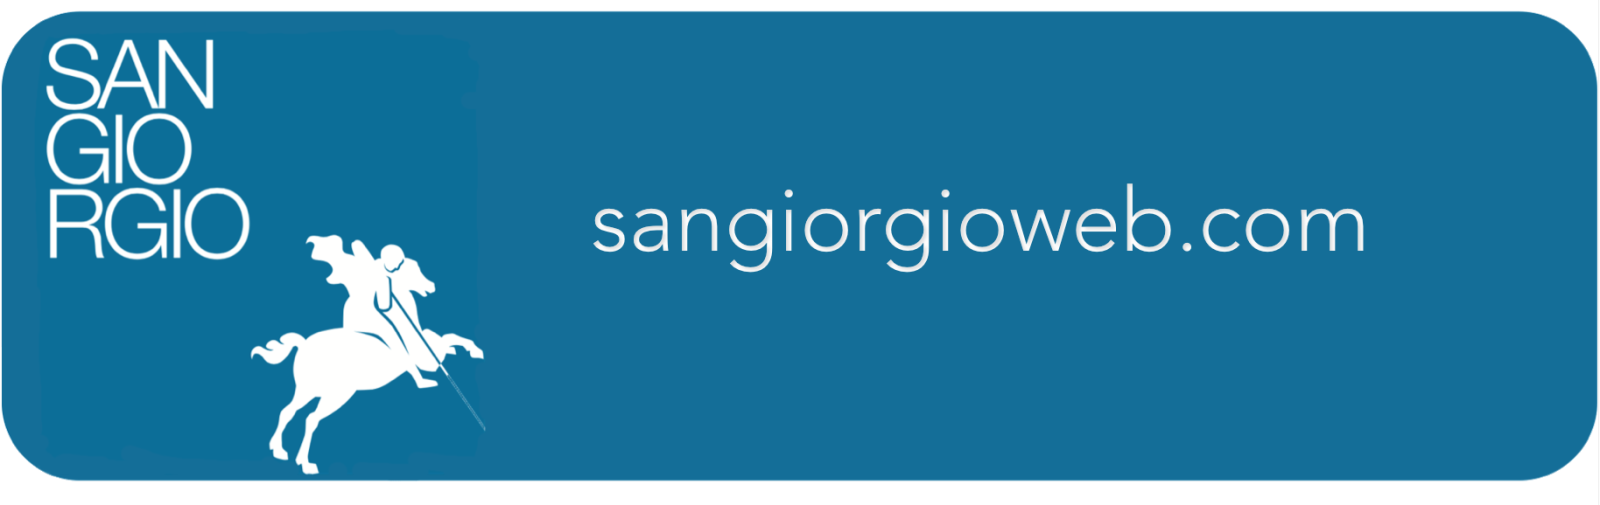 SANGIORGIOWEB.COM